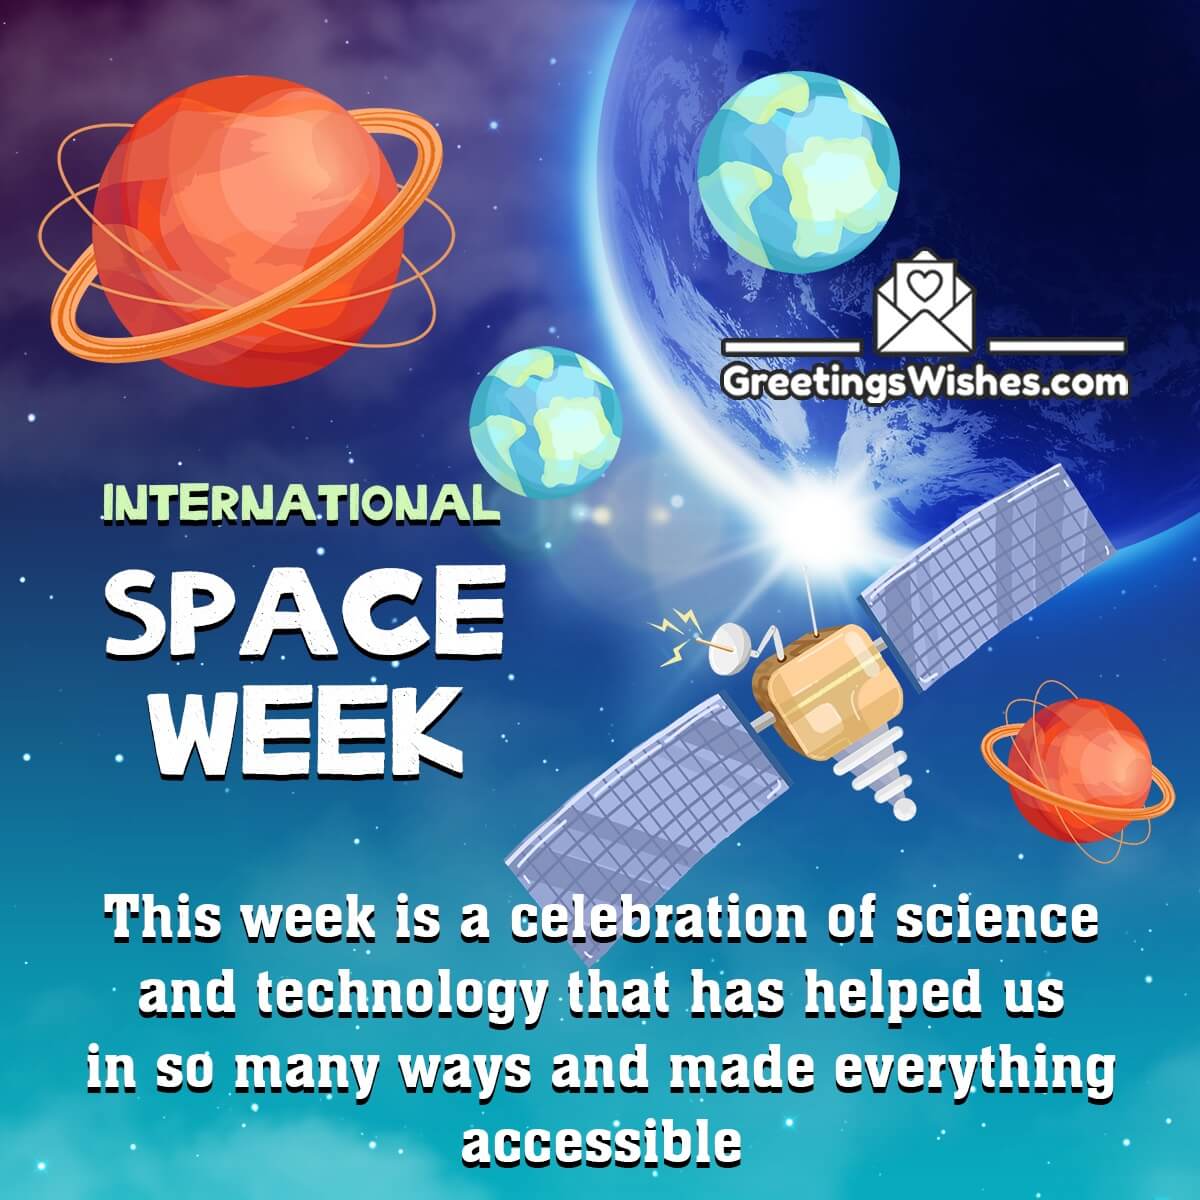 International Space Week Message